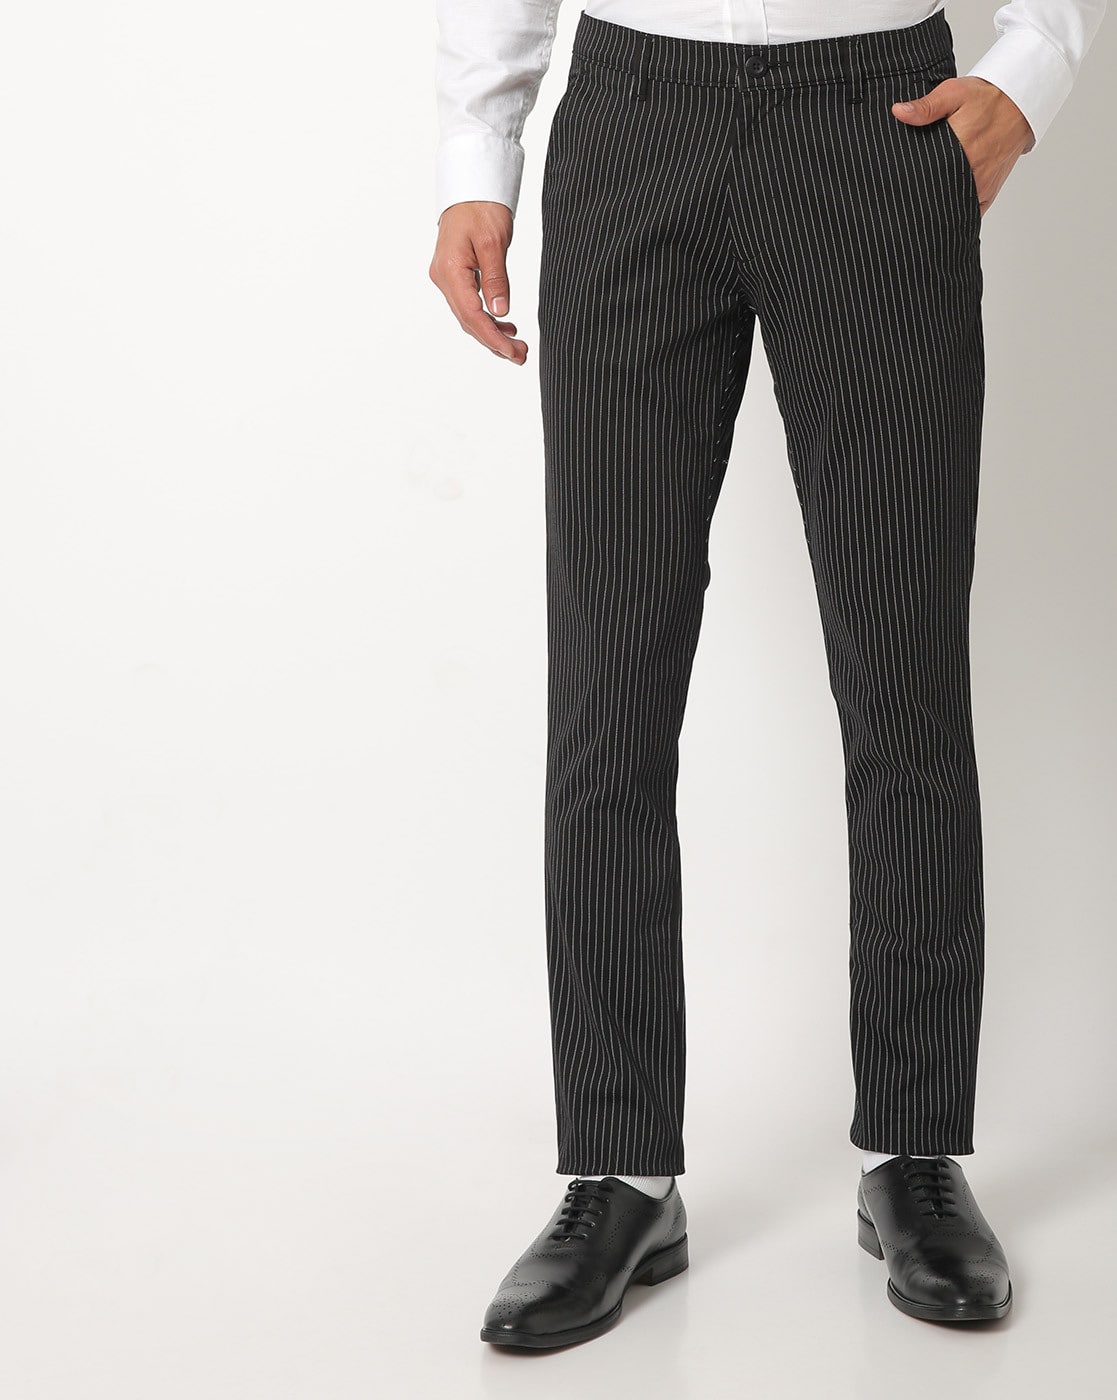 Buy Men Beige Striped Pants Online In India